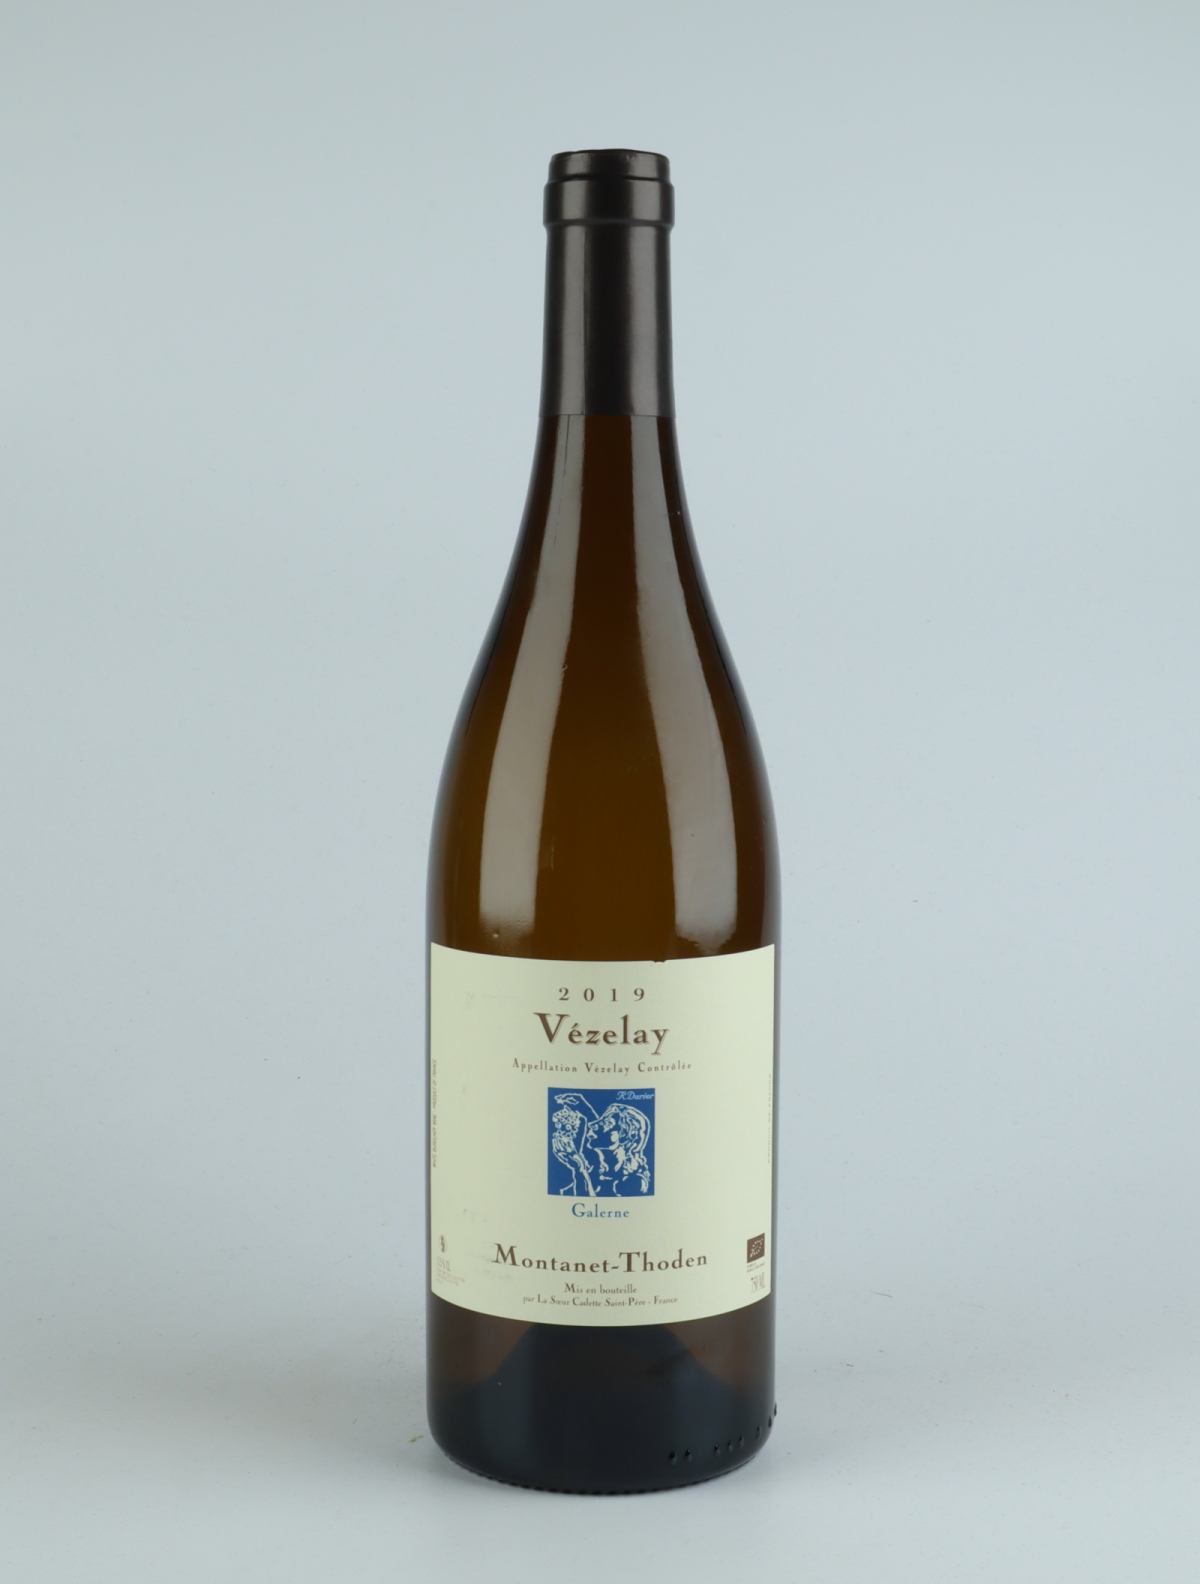 En flaske 2019 Bourgogne Vézelay - Galerne Hvidvin fra Domaine Montanet-Thoden, Bourgogne i Frankrig